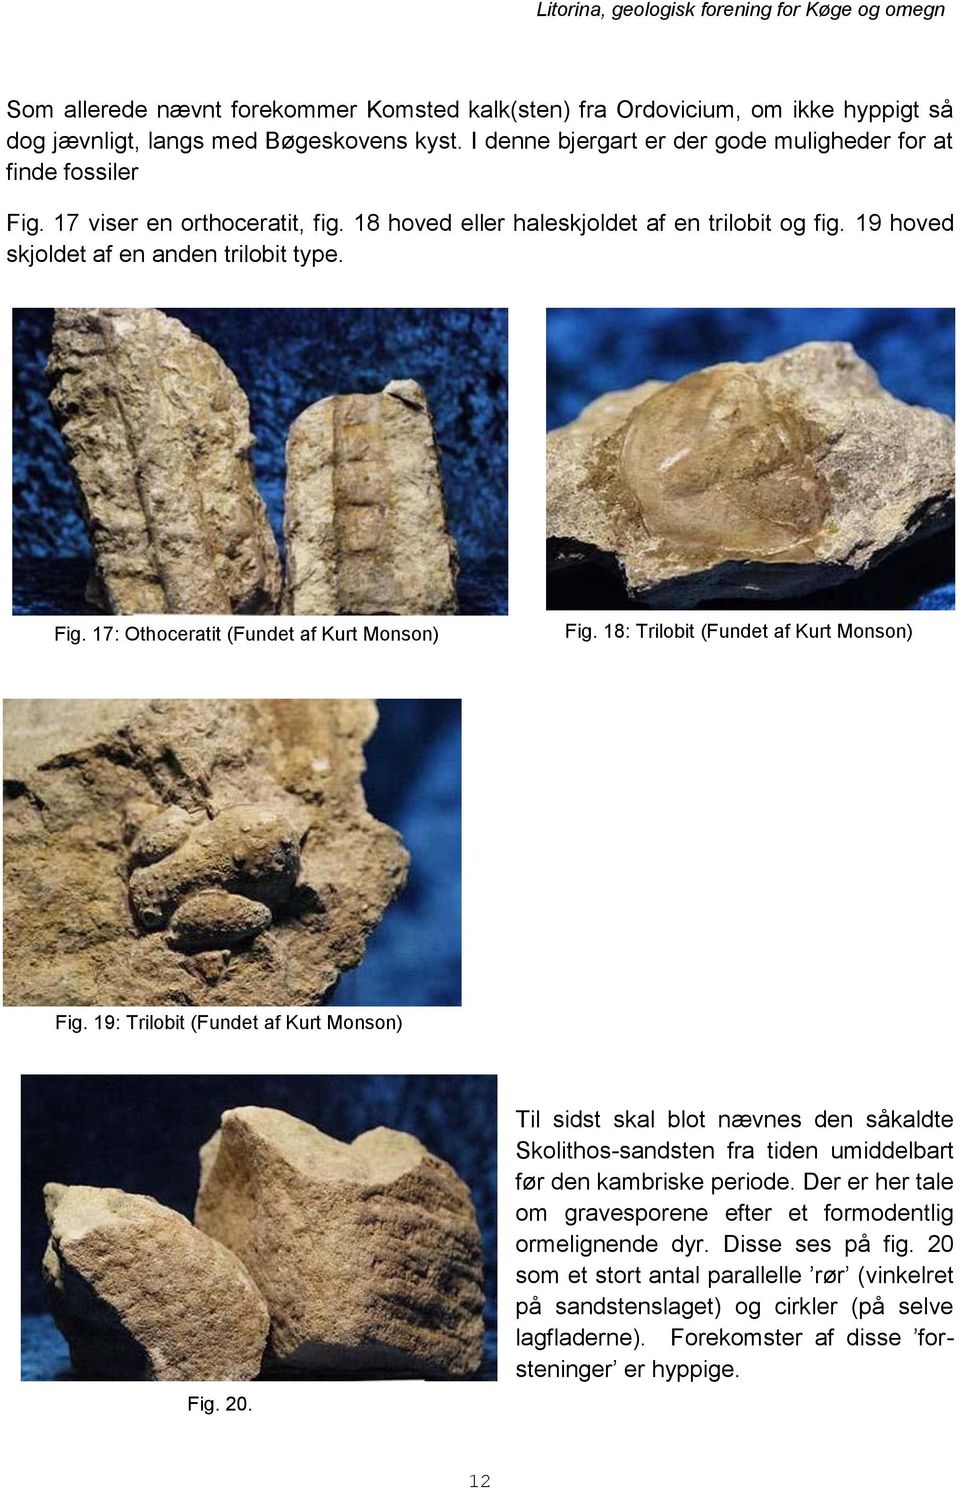 18: Trilobit (Fundet af Kurt Monson) Fig. 19: Trilobit (Fundet af Kurt Monson) Fig. 20. Til sidst skal blot nævnes den såkaldte Skolithos-sandsten fra tiden umiddelbart før den kambriske periode.